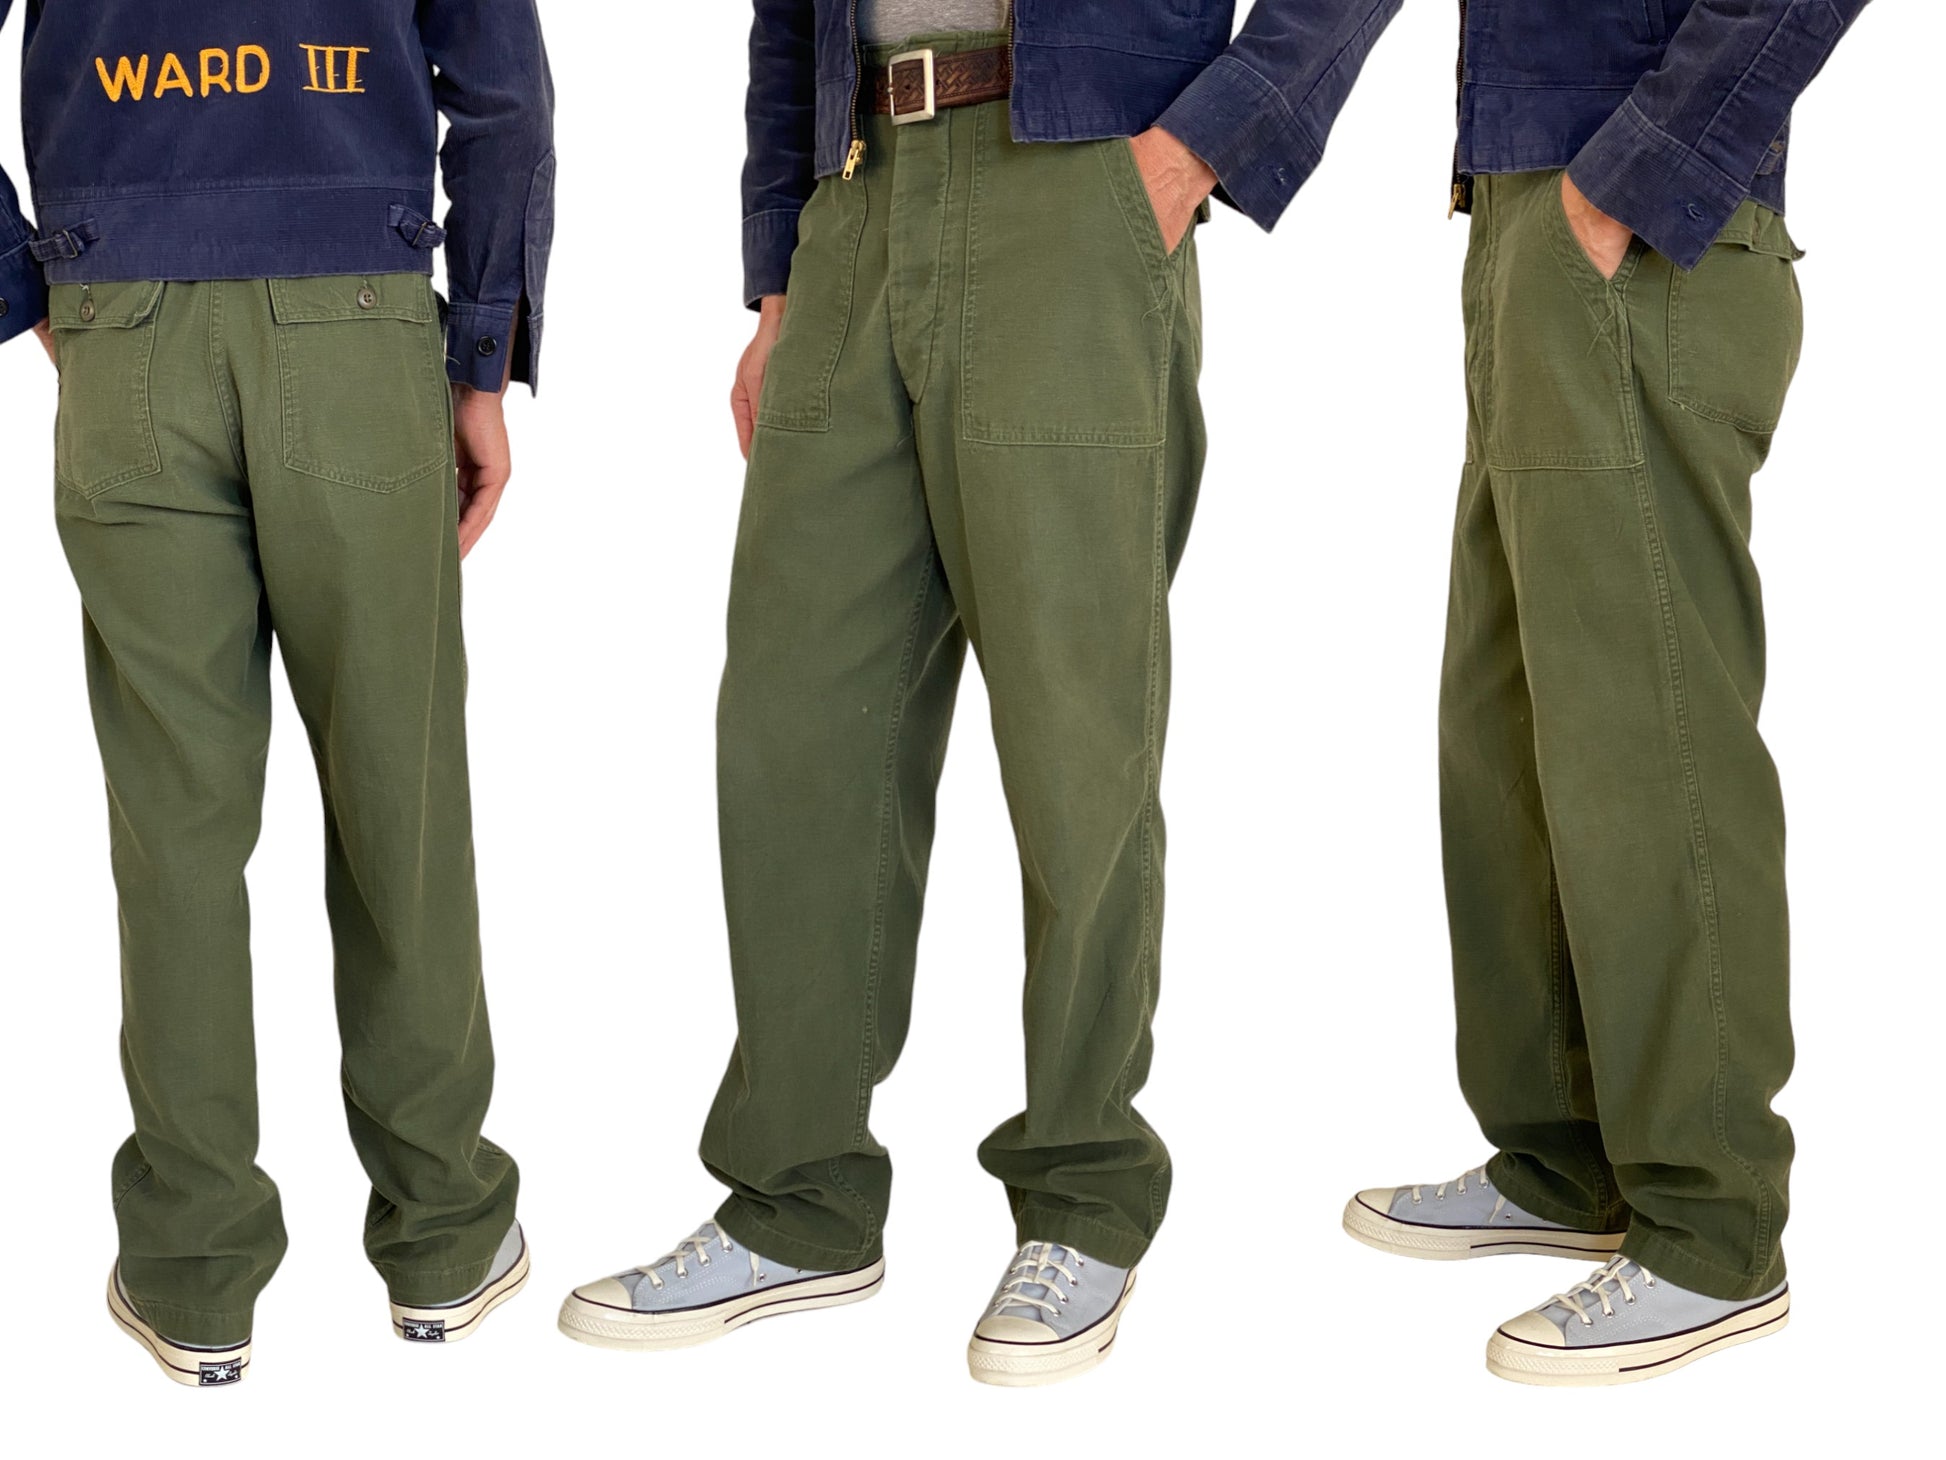 Authentic Vietnam era 1975 US Army fatigue/utility pants, size 31X33.